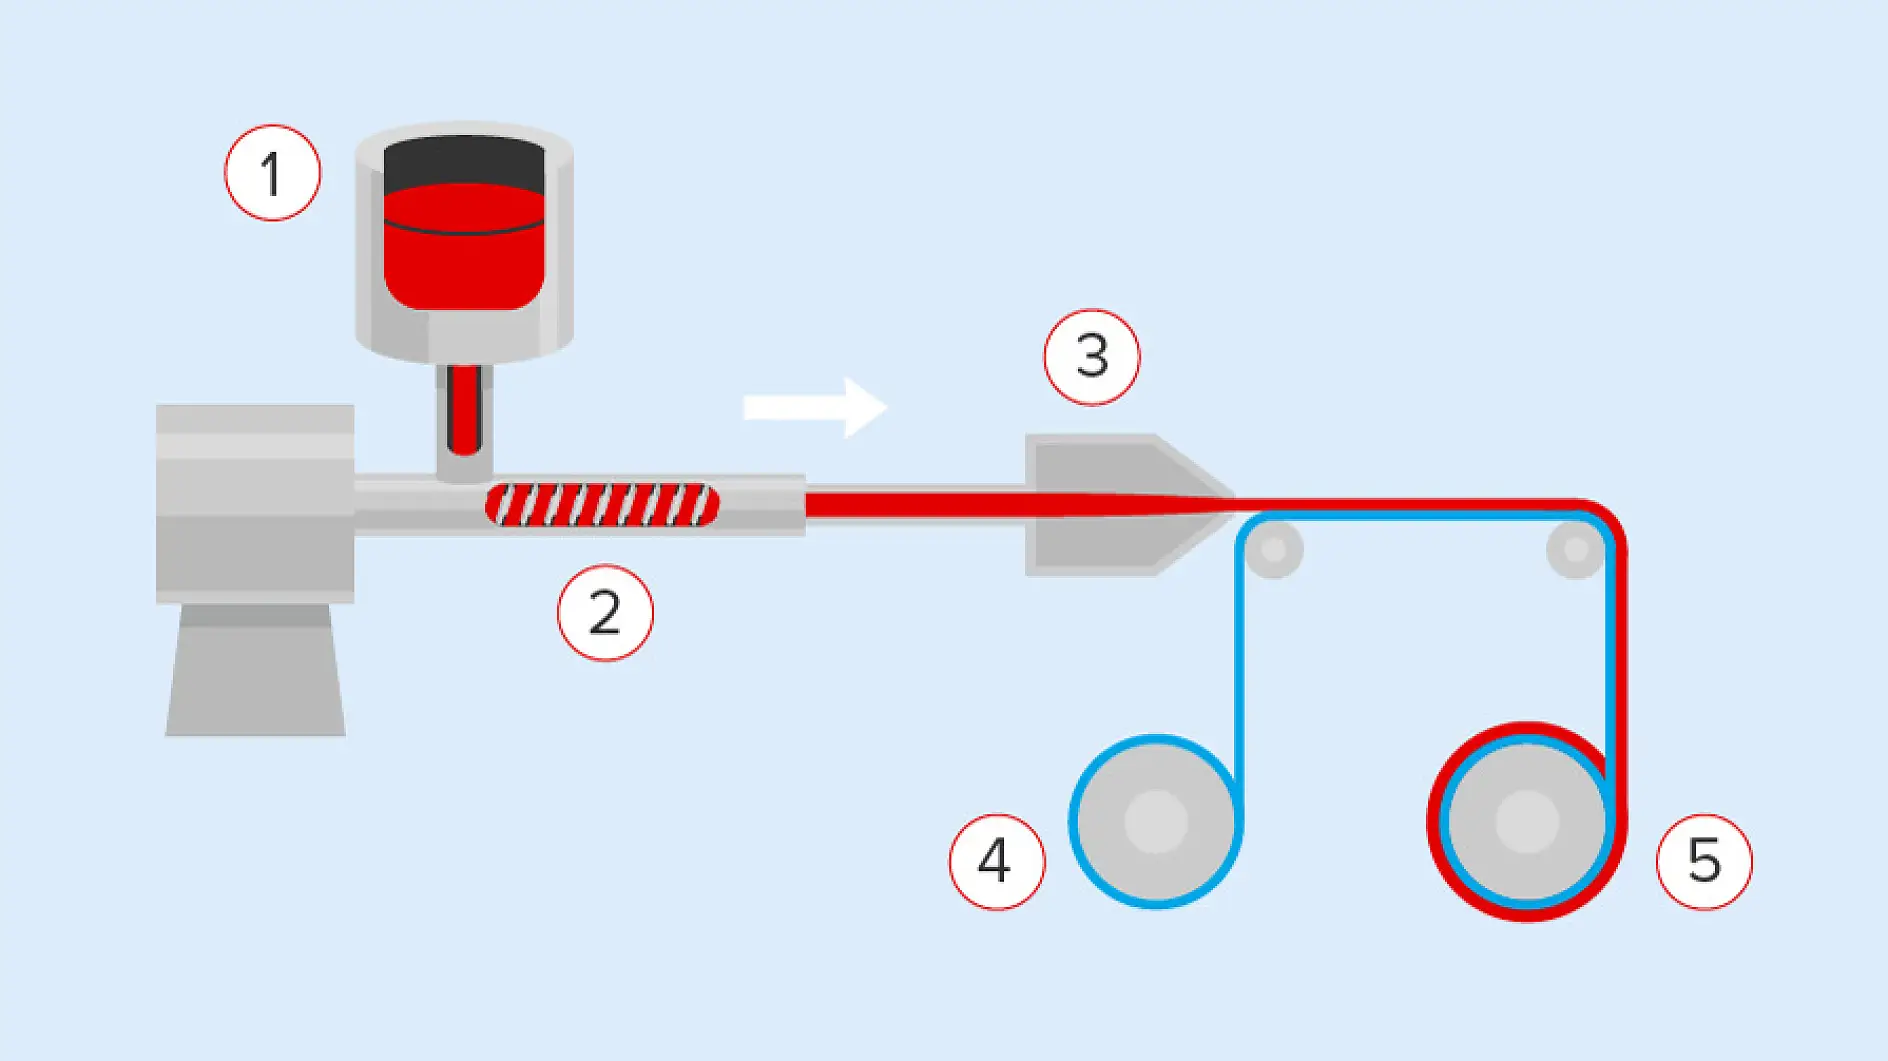 Akriliniais klijais juosta gali būti padengiama tradiciniu būdu su tirpikliais (vandeniu ar cheminėmis medžiagomis) arba be tirpiklių, kaip pavaizduota paveikslėlyje: sudedamosios dalys kaitinamos (1), sumaišomos ir sujungiamos kryžminėmis jungtimis vykstant specialiam ekstruzijos procesui (2), tada tiesiogiai perkeliamos (3) ant juostos pagrindo (4). Galutinis gaminys suvyniojamas į atskirus ritinius (5).